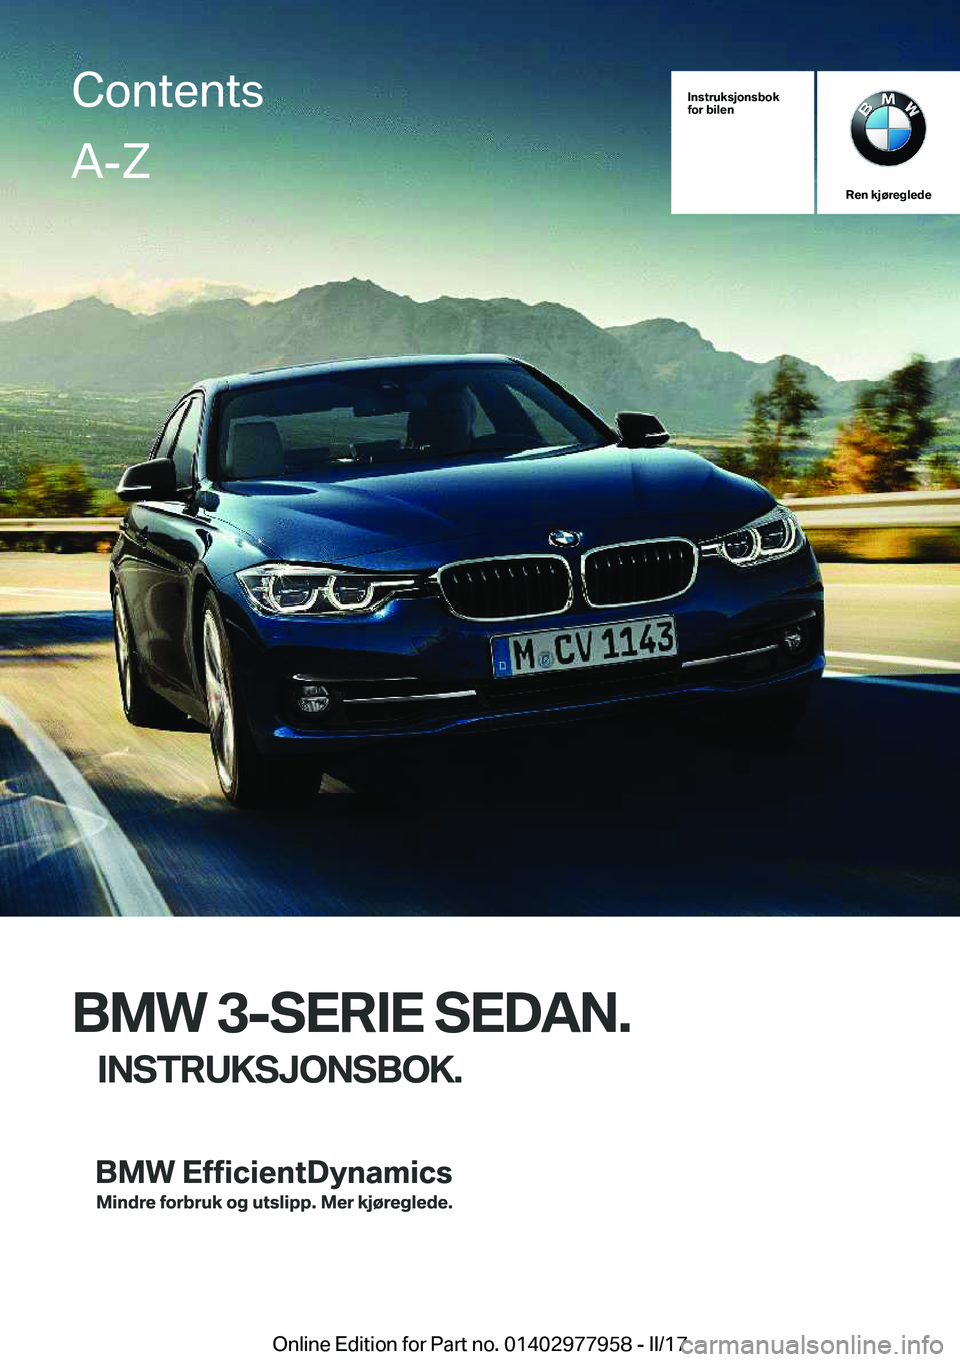 BMW 3 SERIES 2017  InstruksjonsbØker (in Norwegian) �I�n�s�t�r�u�k�s�j�o�n�s�b�o�k
�f�o�r��b�i�l�e�n
�R�e�n��k�j�